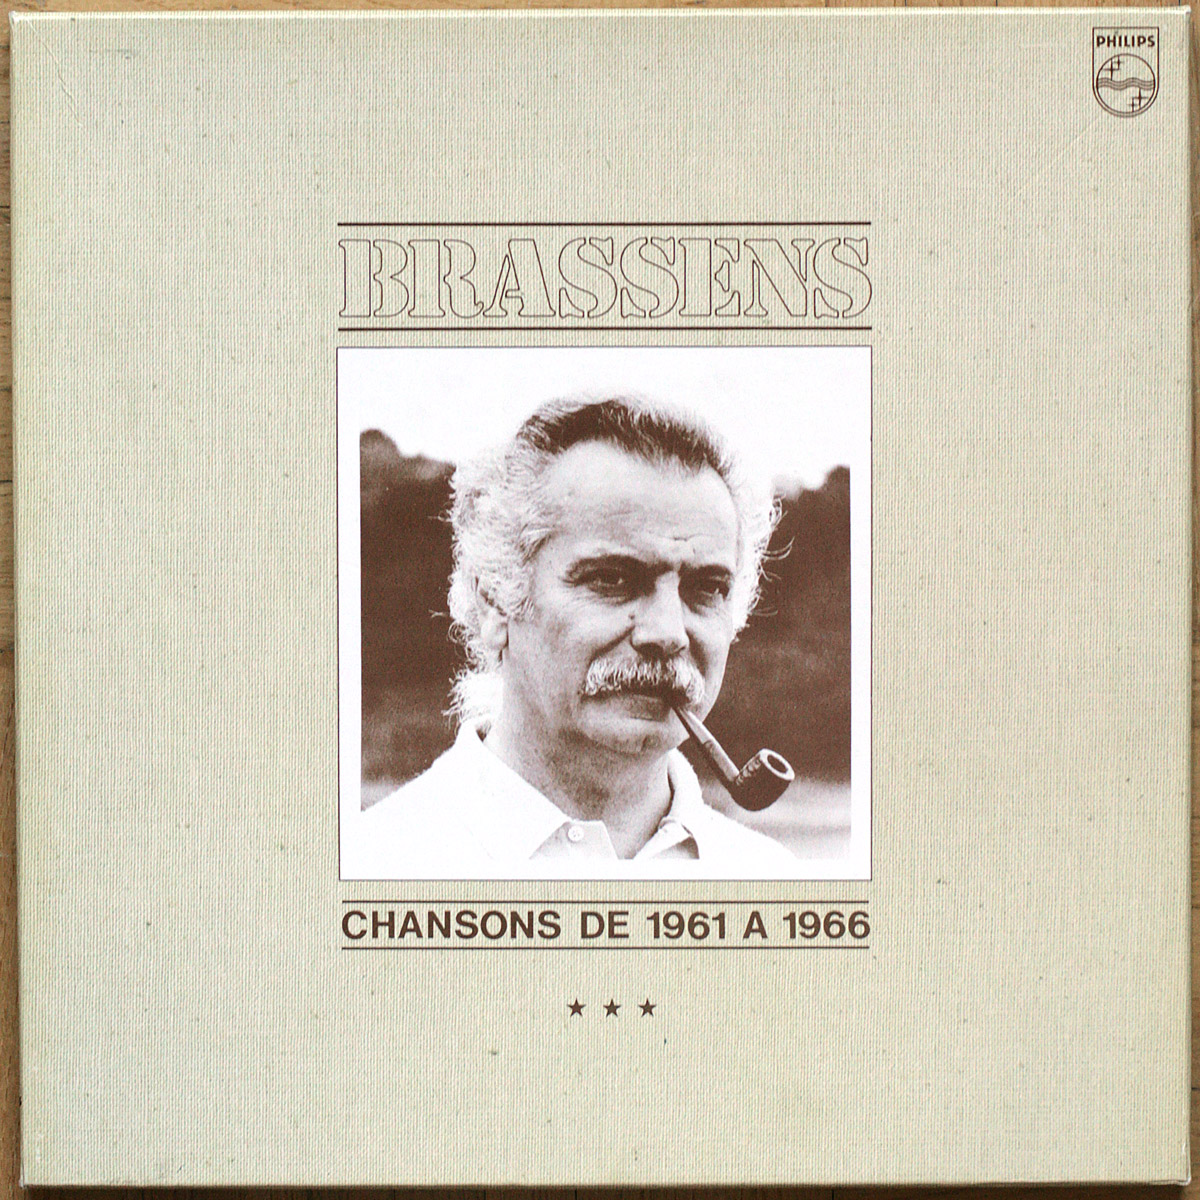 Georges Brassens • Volume 3 • Chansons de 1961 à 1966 • Philips 66-41 958